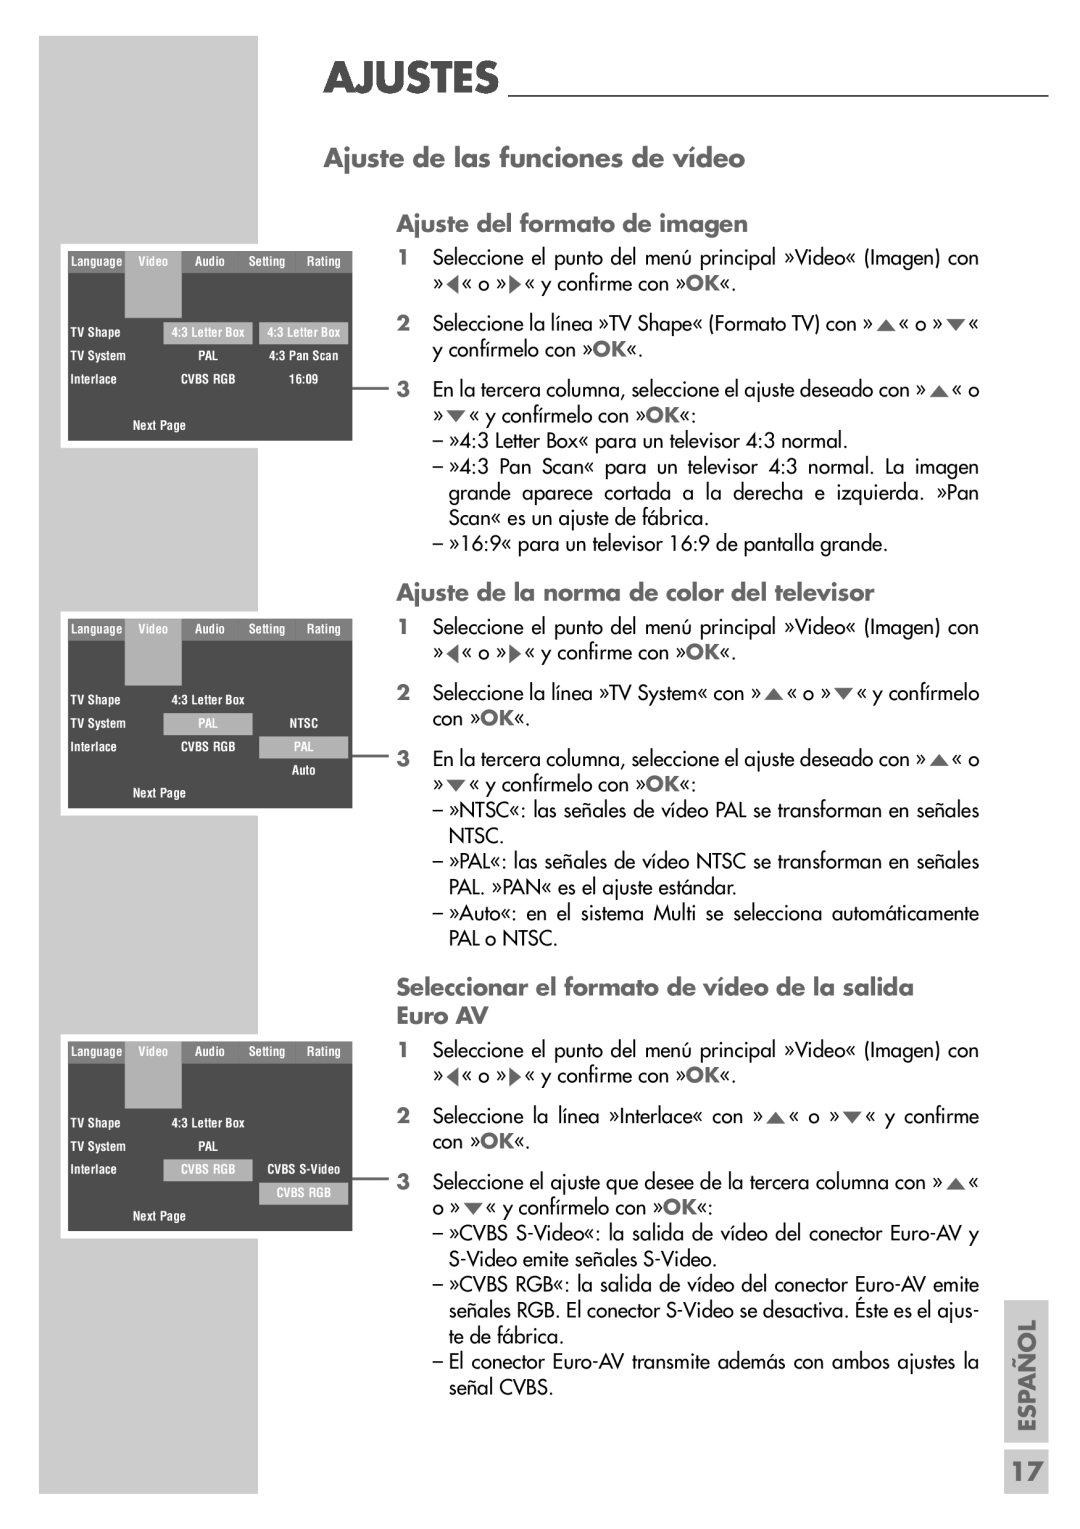 Grundig DR 5400 DD manual Ajuste de las funciones de vídeo, Ajuste del formato de imagen, Español 